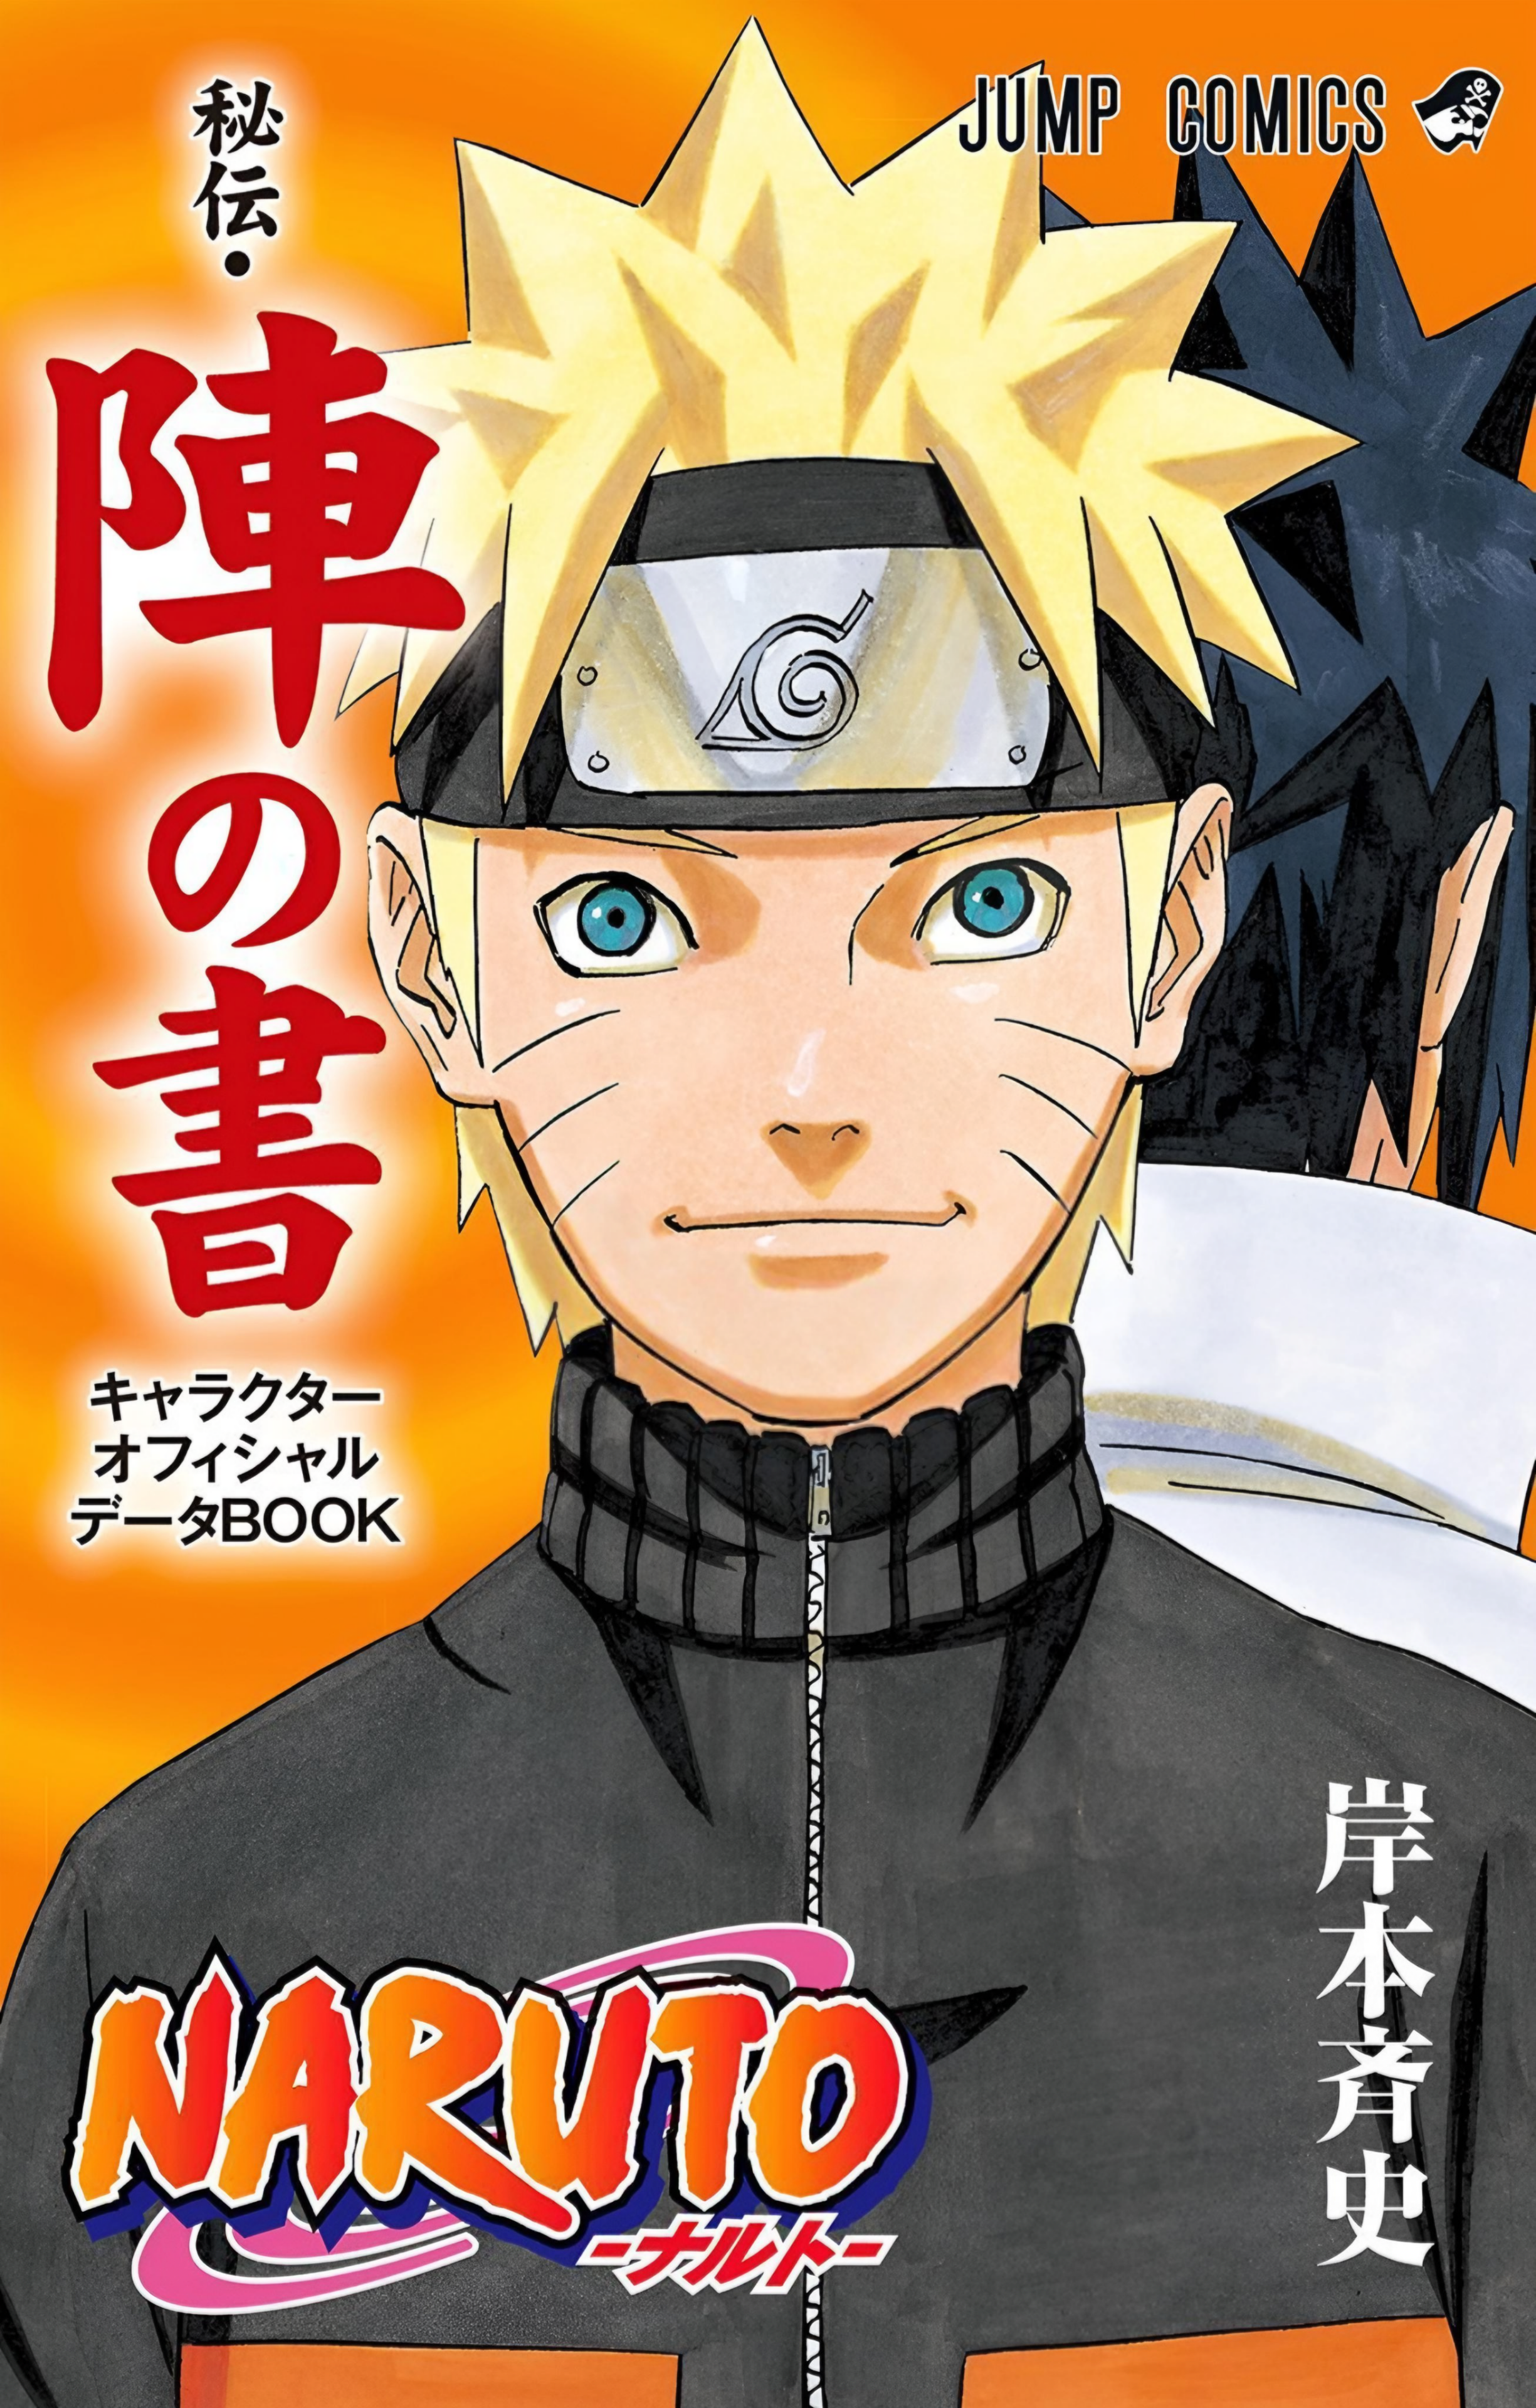 Naruto - Novo projeto secreto chega em novembro!